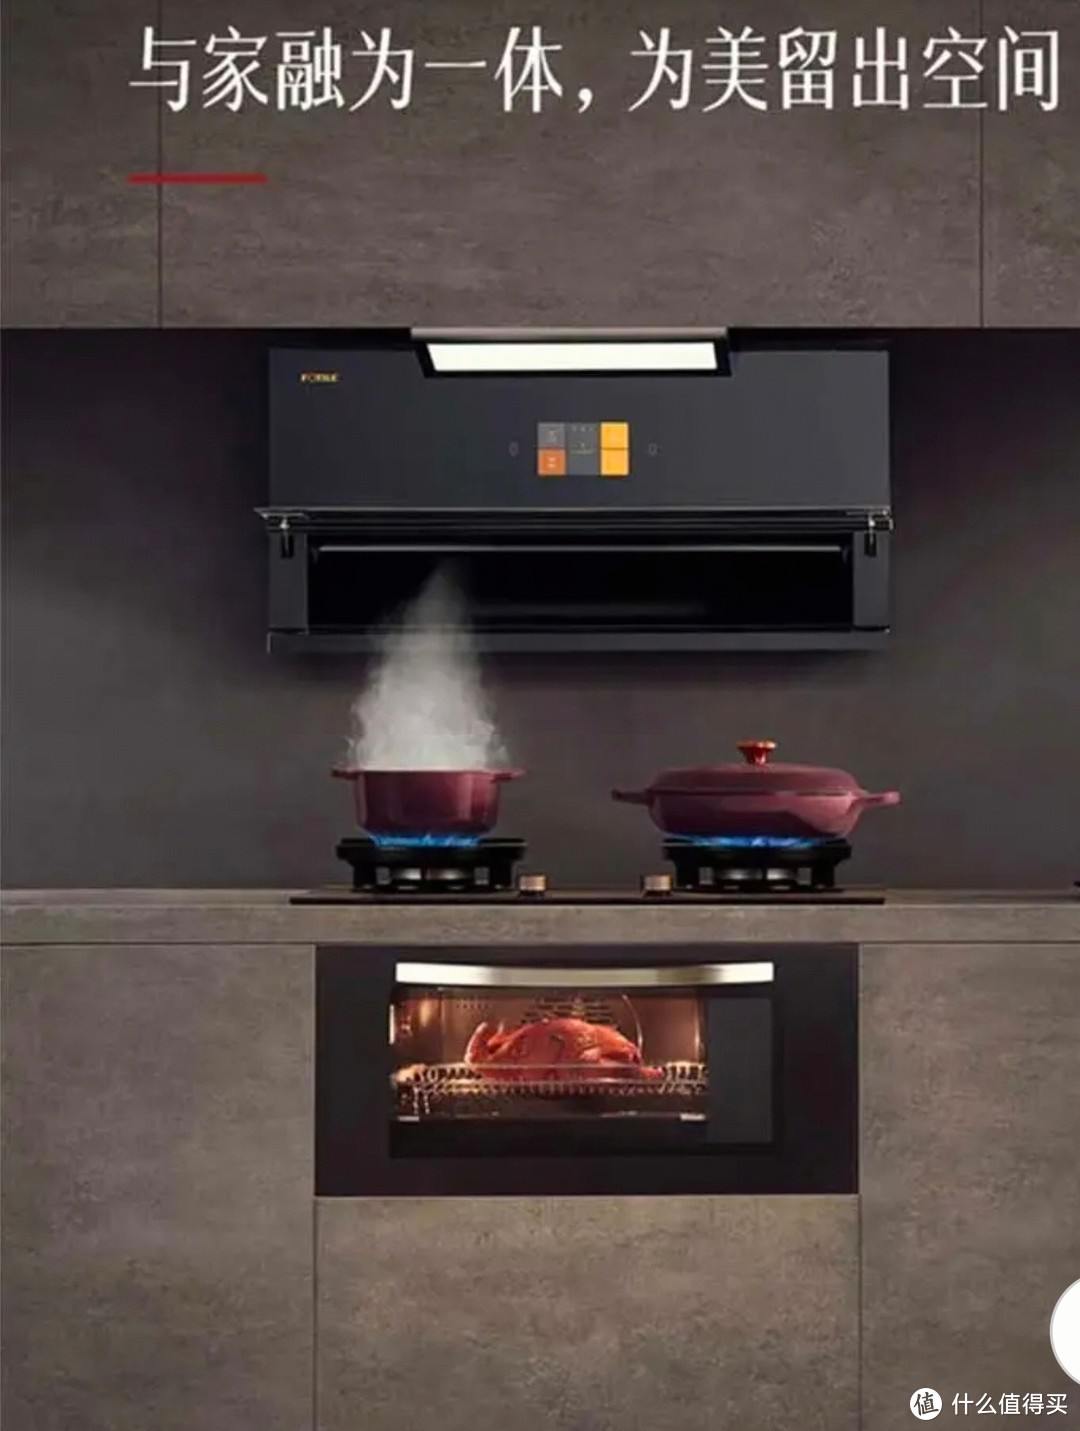 方太集成烹饪中心超薄低吸变频烟灶蒸箱烤箱一体机03-X1S/X1A/X2A+02-X2.i 03-X1S+02-X2.i